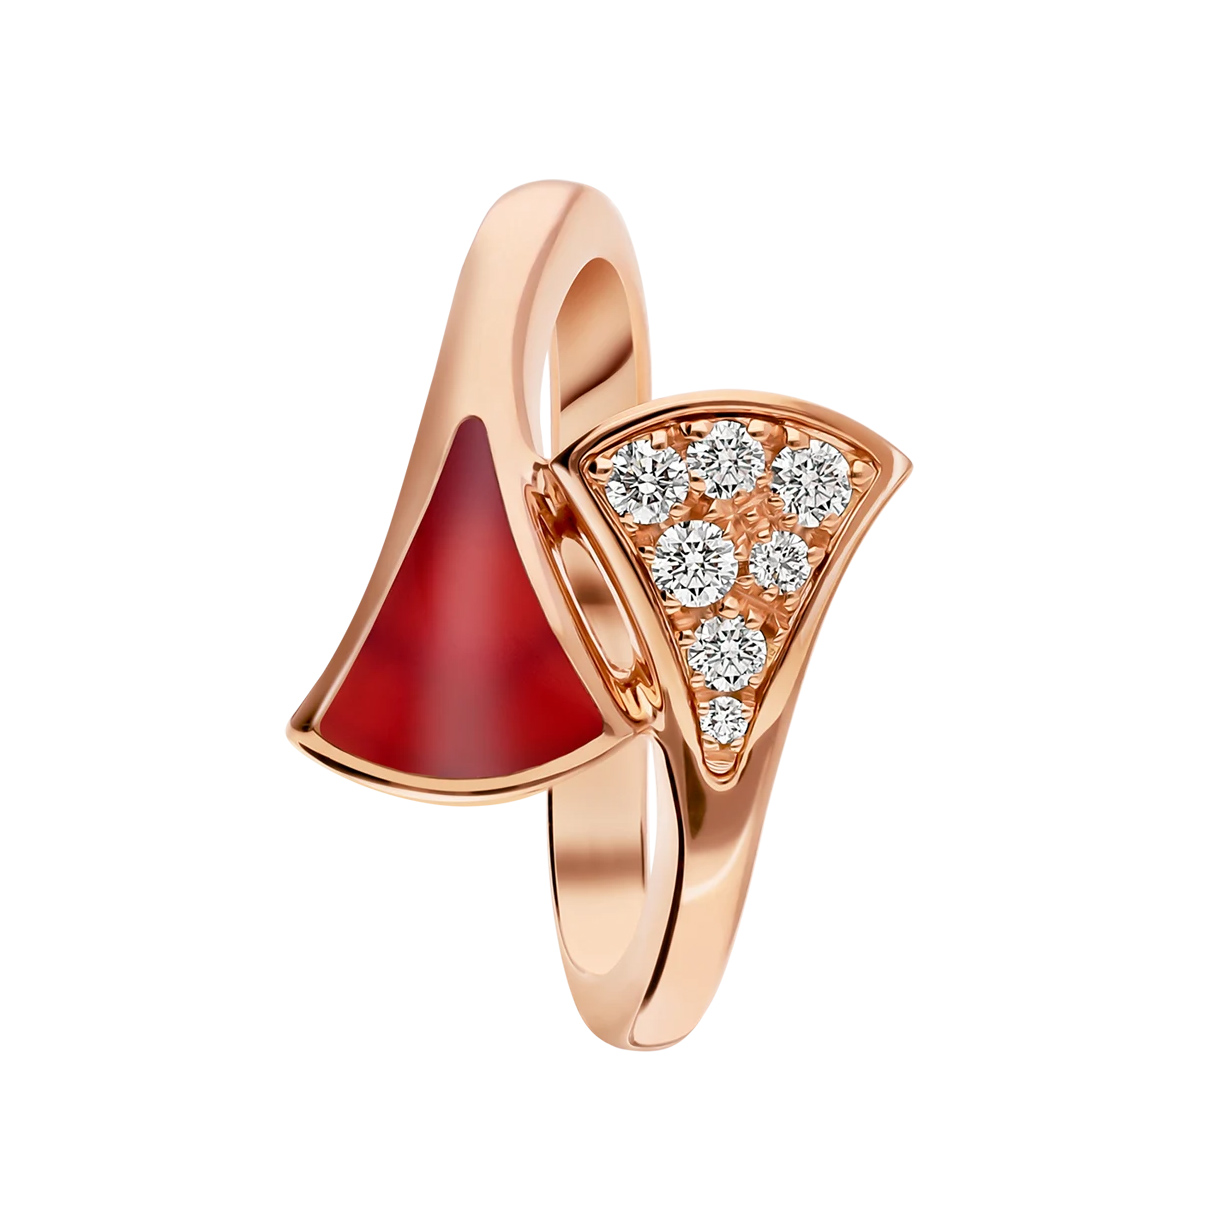 OEM 쥬얼리에서 20년 동안 홍옥수 요소와 파베 다이아몬드가 세팅된 도매 18k OEM/ODM 쥬얼리 로즈 골드 반지